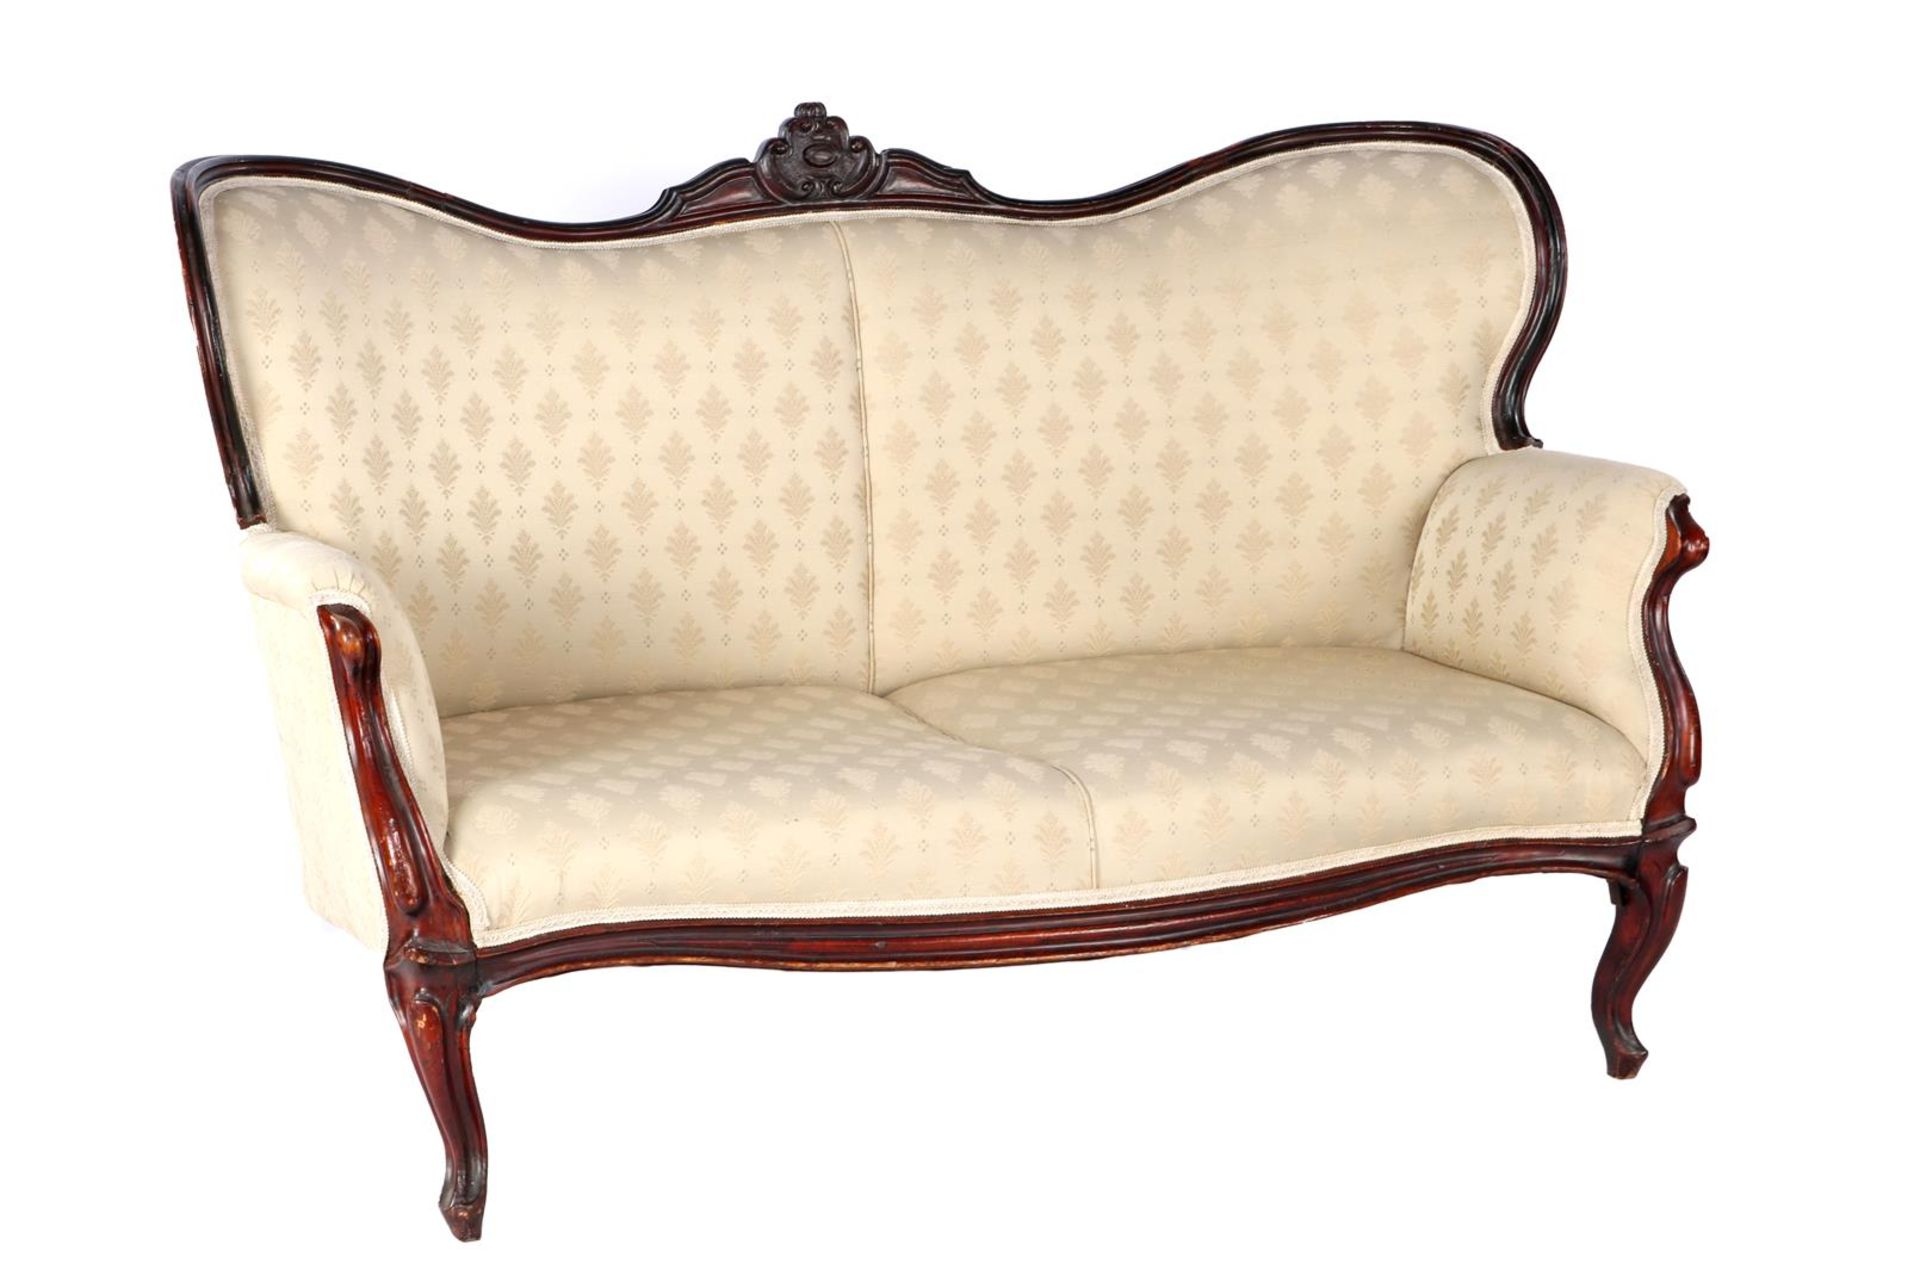 Noten Biedermeier upholstered butterfly sofa with floral motif